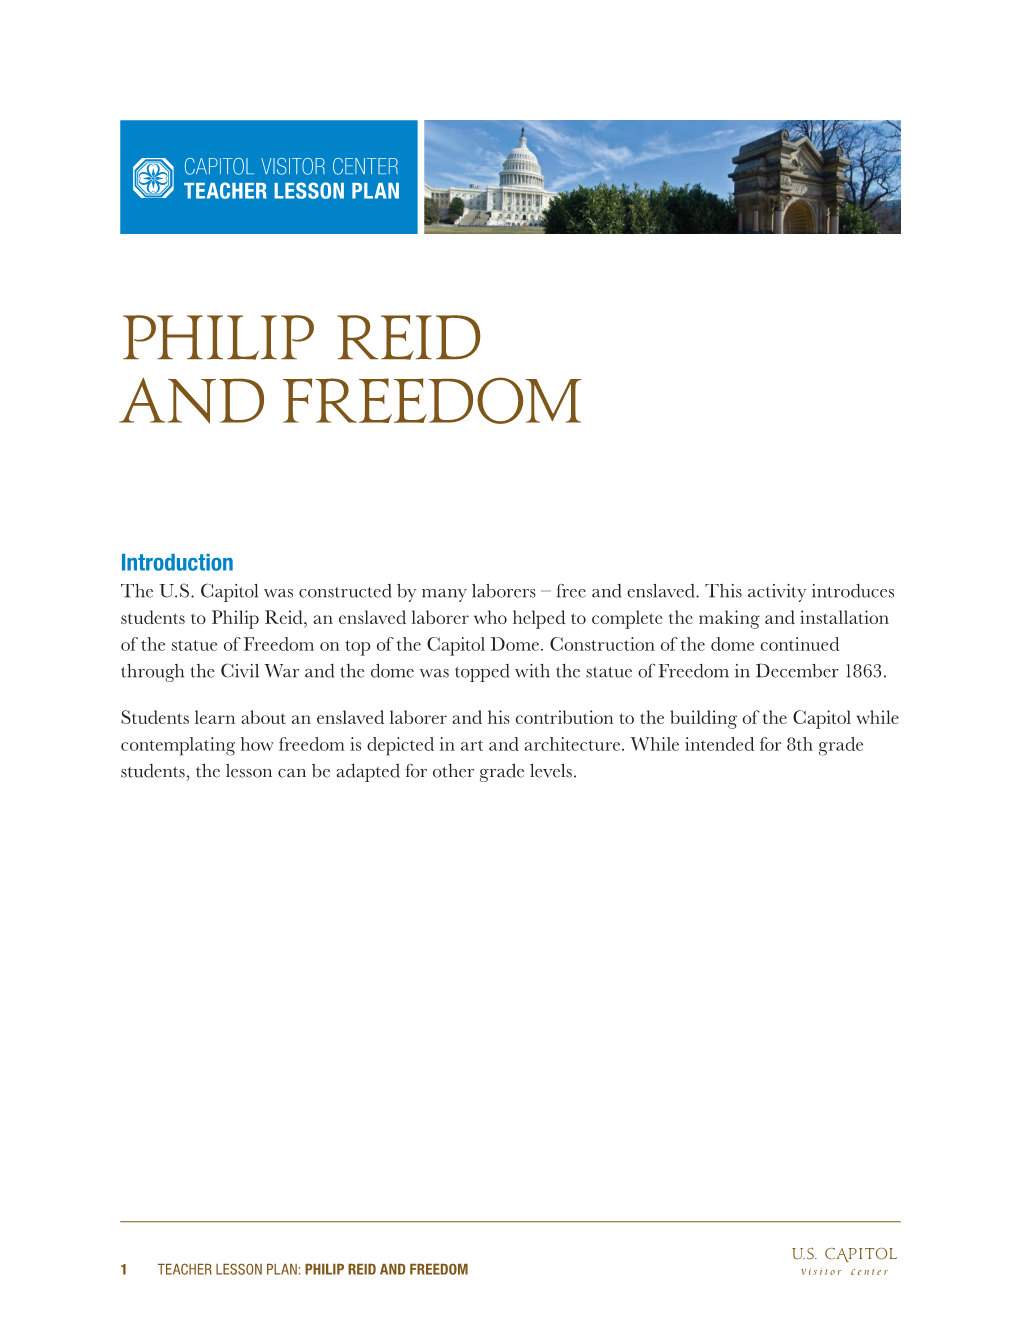 Philip Reid and Freedom